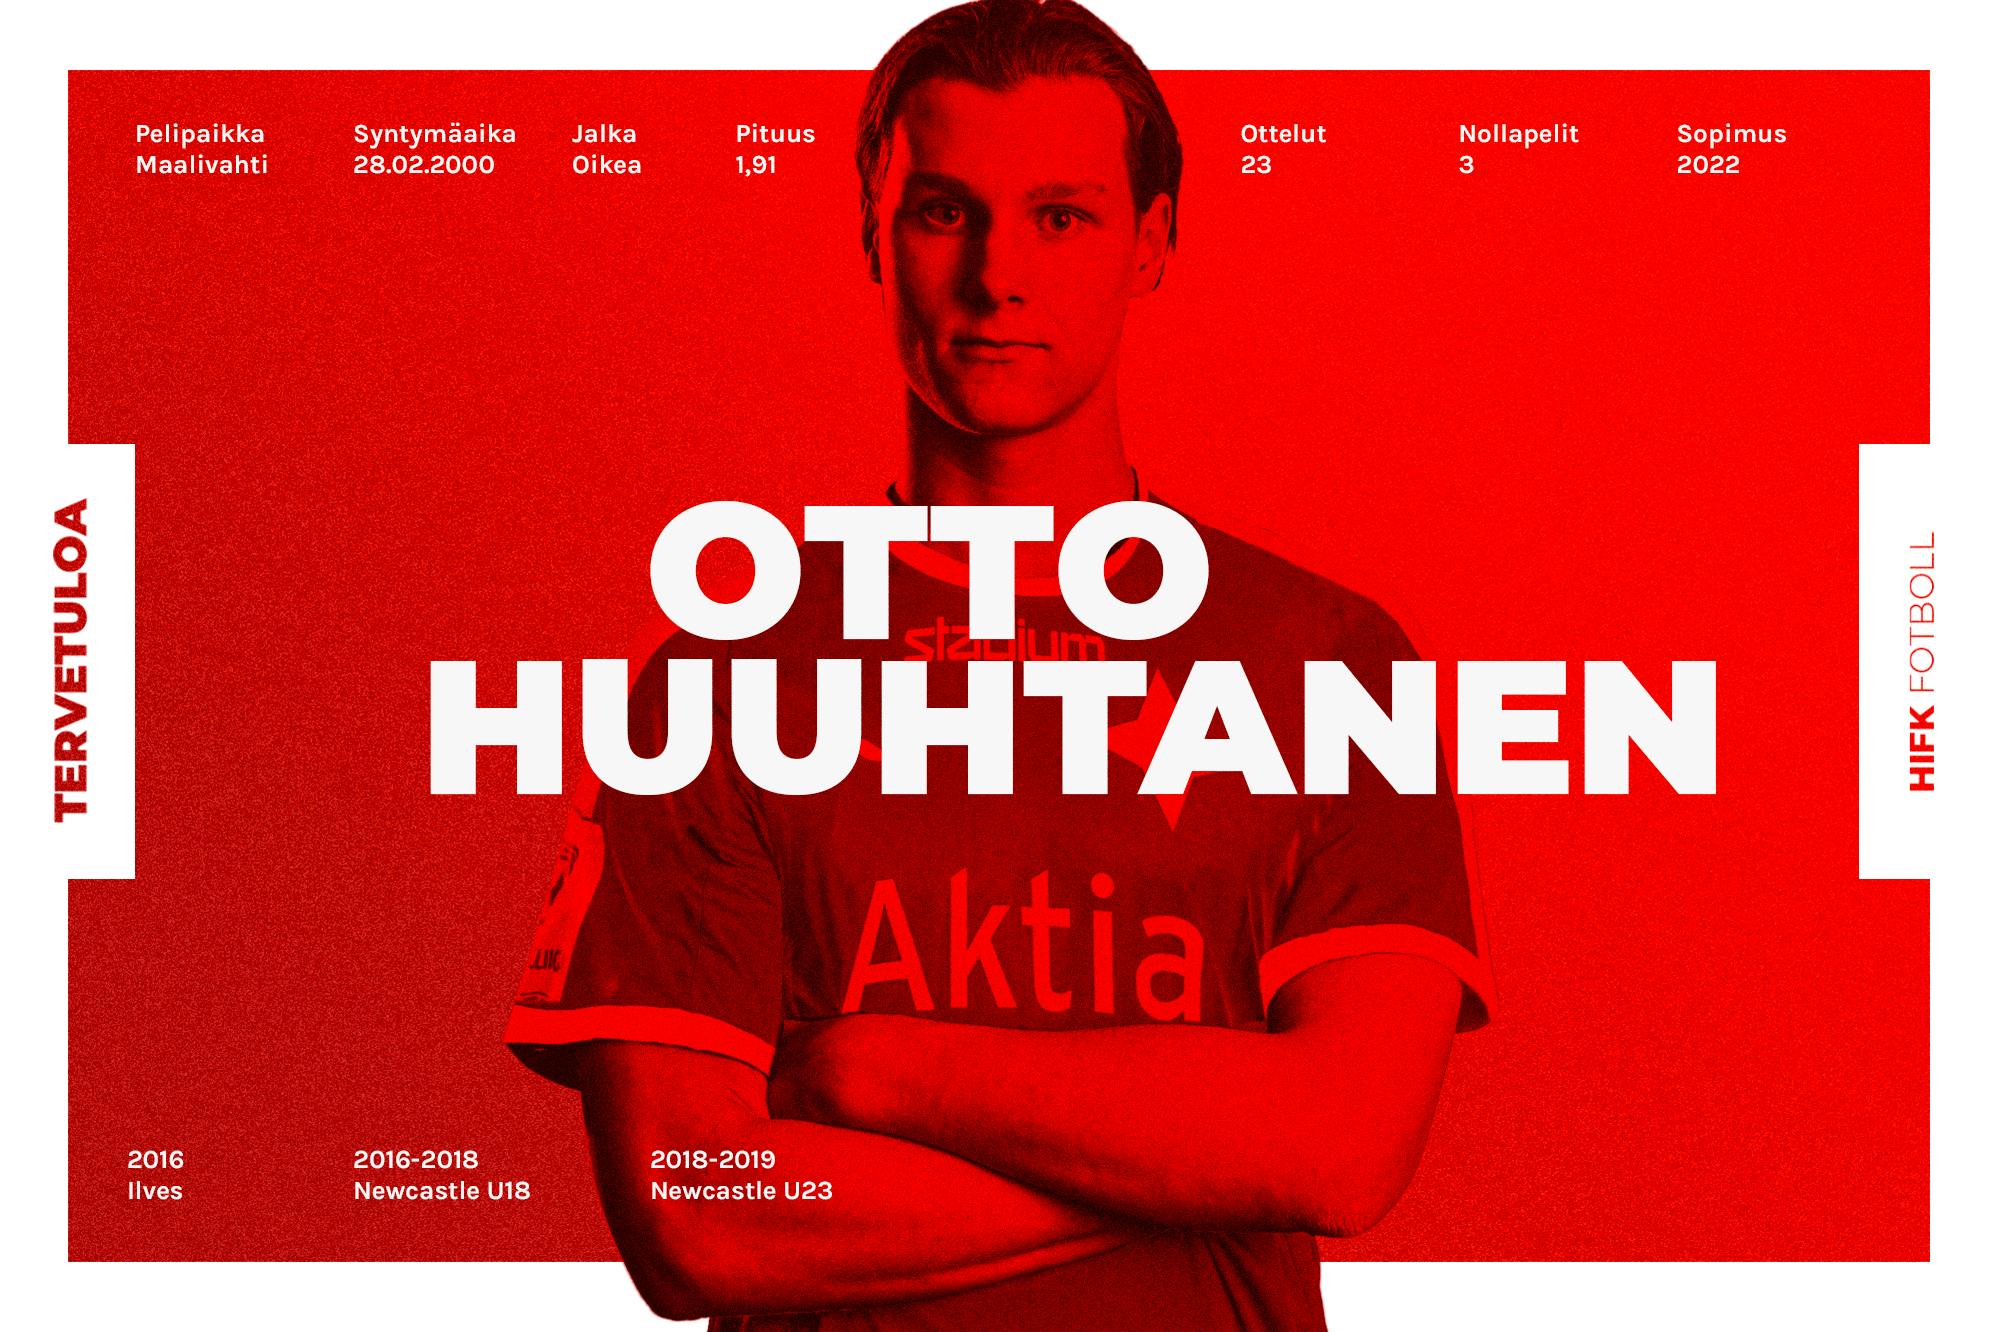 HIFK värvar målvakten Otto Huuhtanen